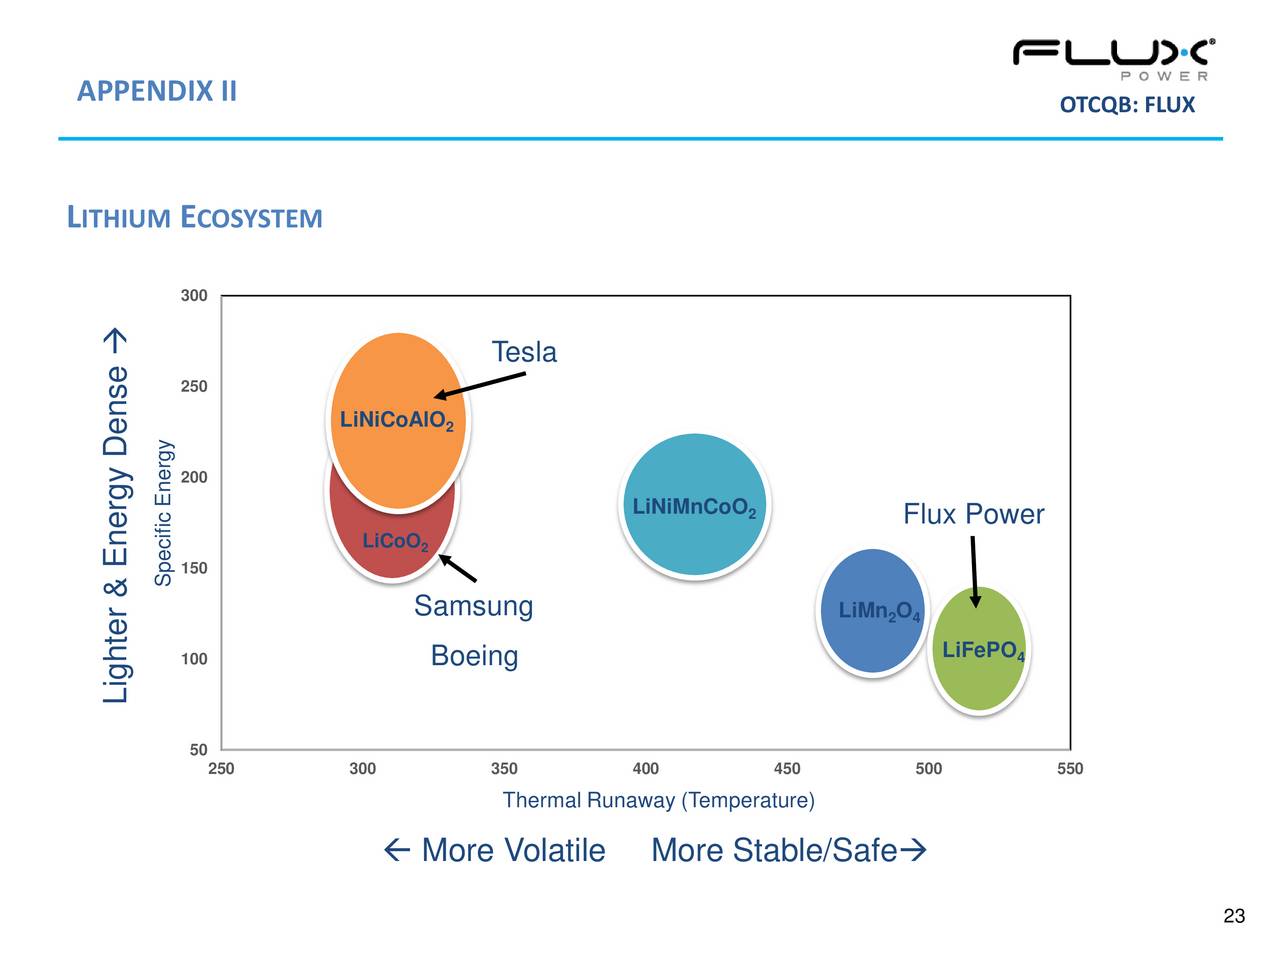 flux power holdings